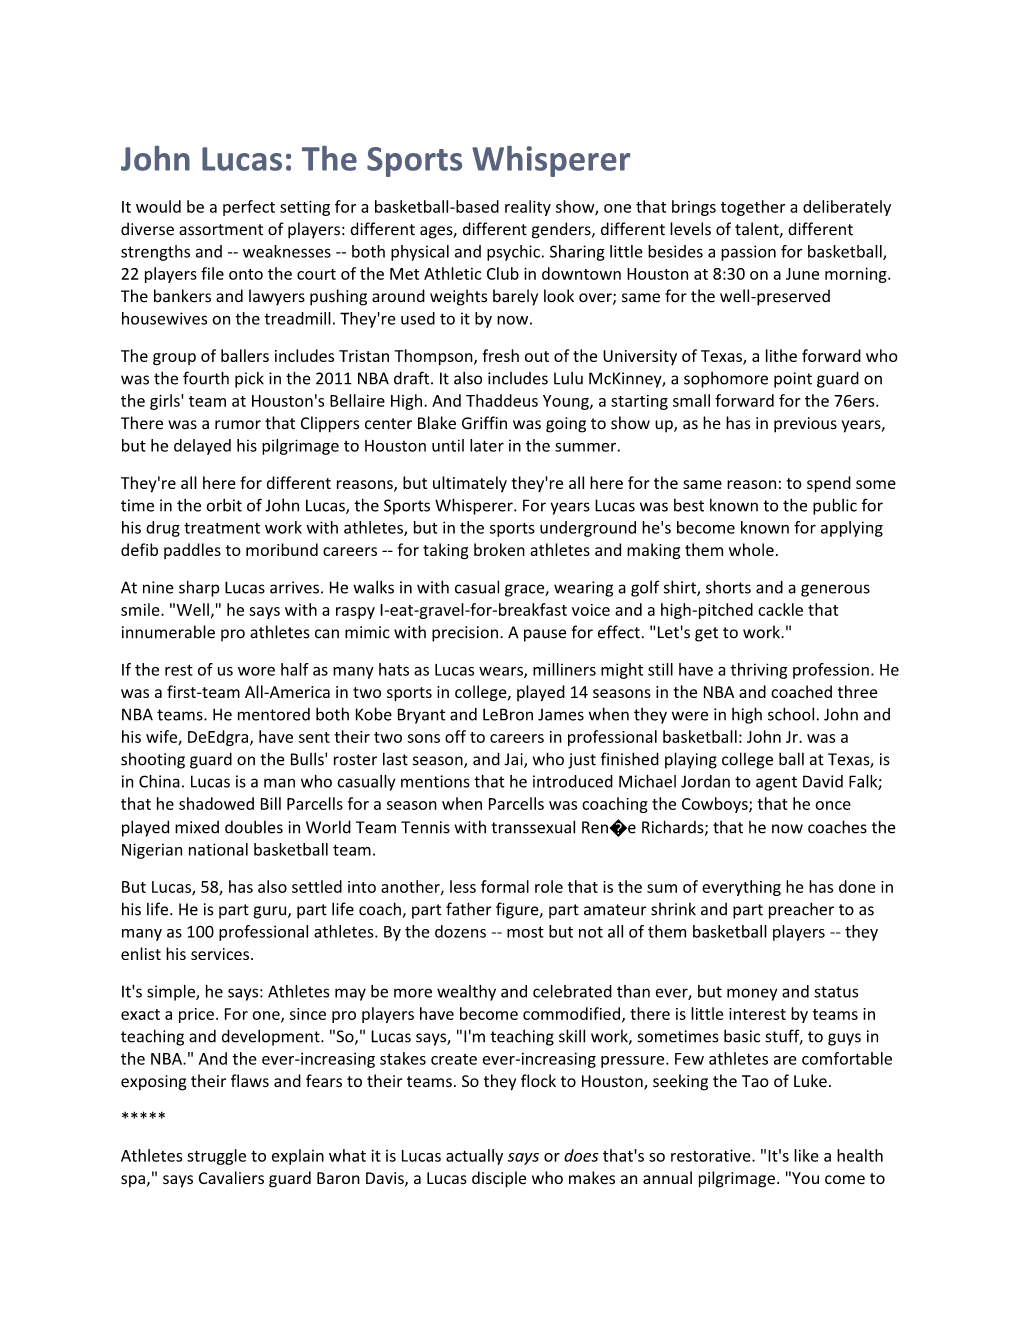 John Lucas: the Sports Whisperer